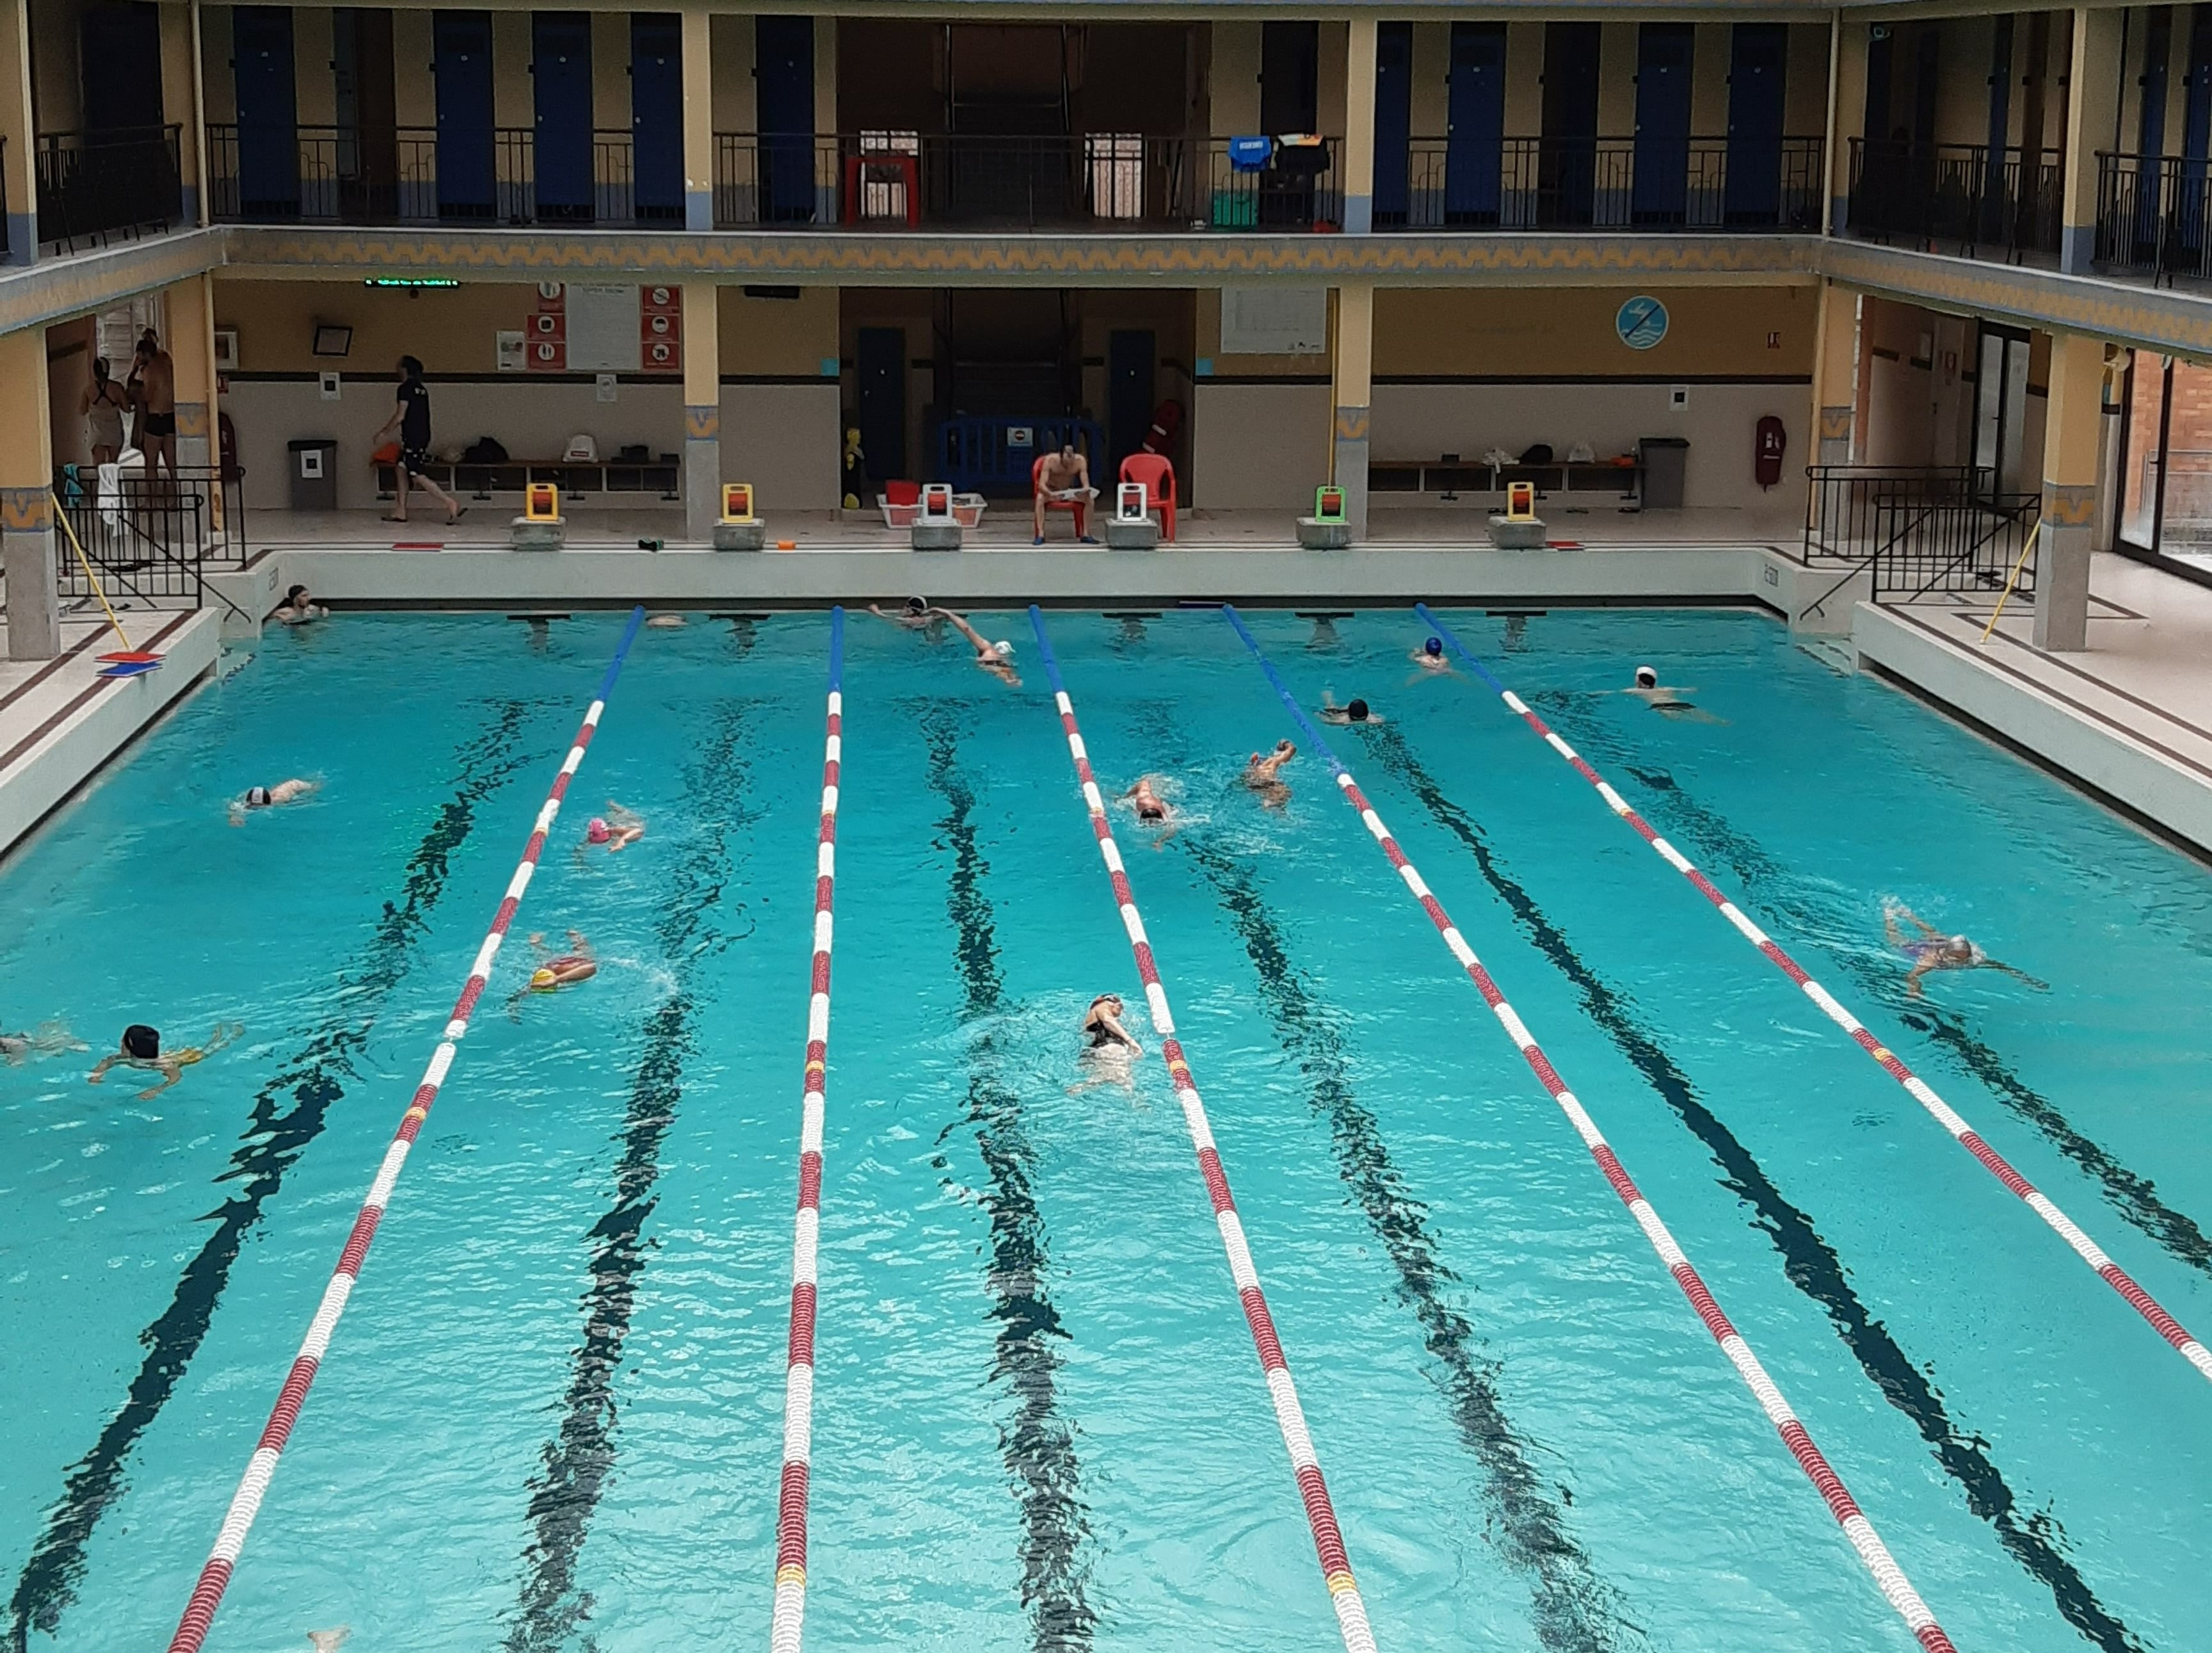 La température de l'eau des piscines de Rennes refroidit certains nageurs -  France Bleu